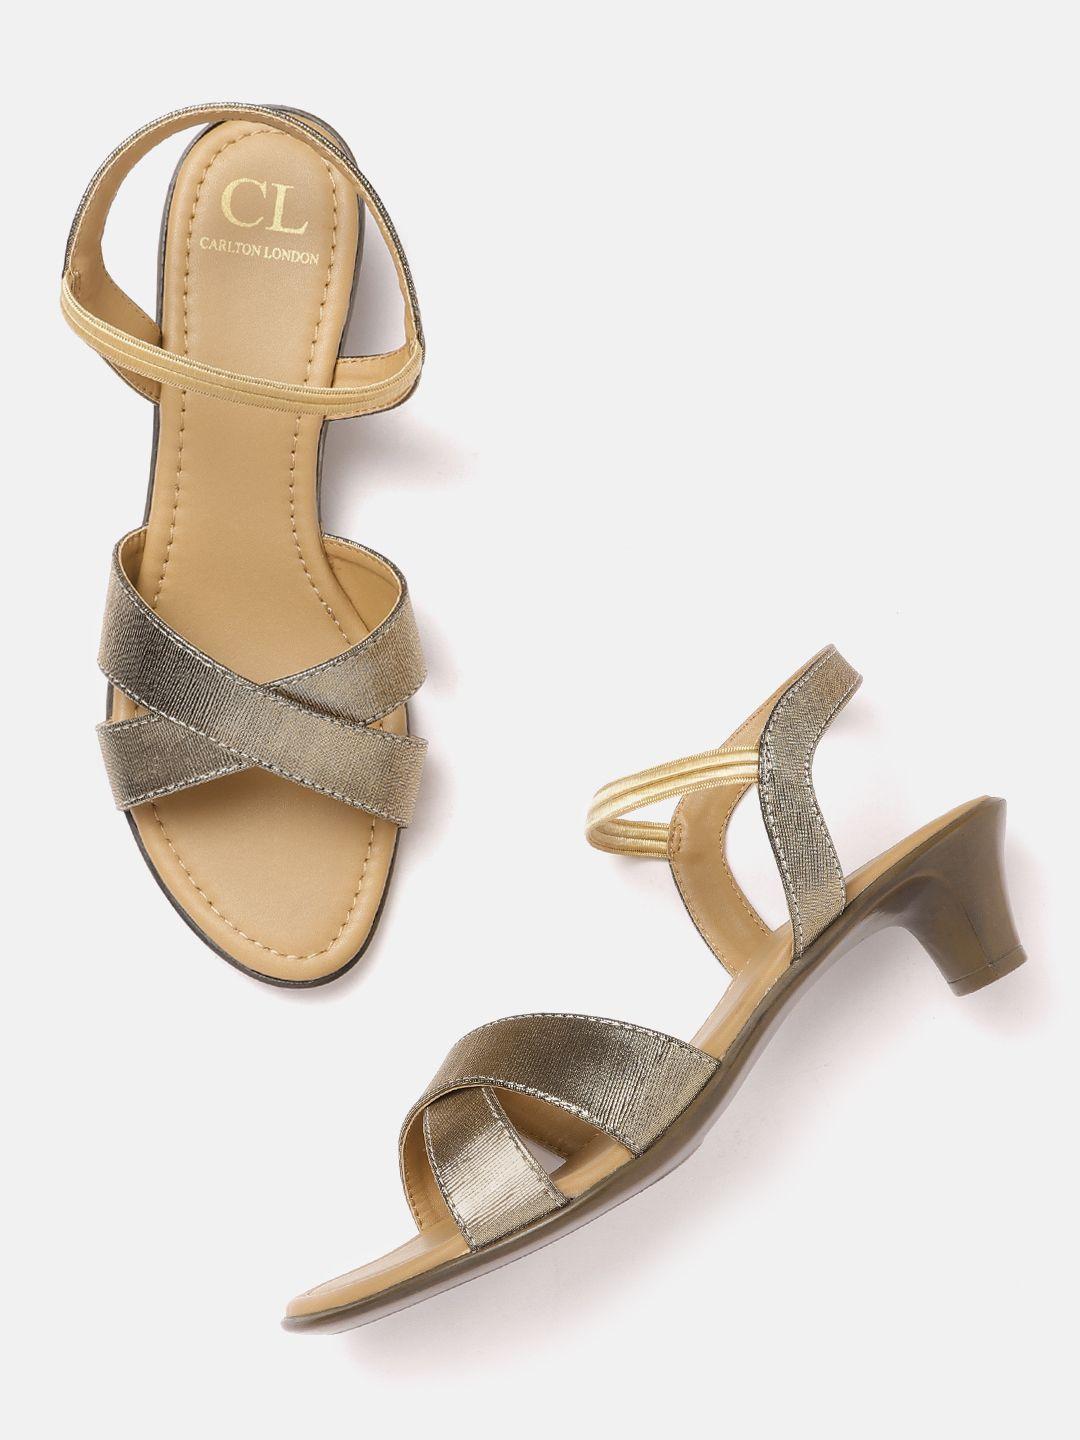 carlton-london-women-copper-toned-block-heels